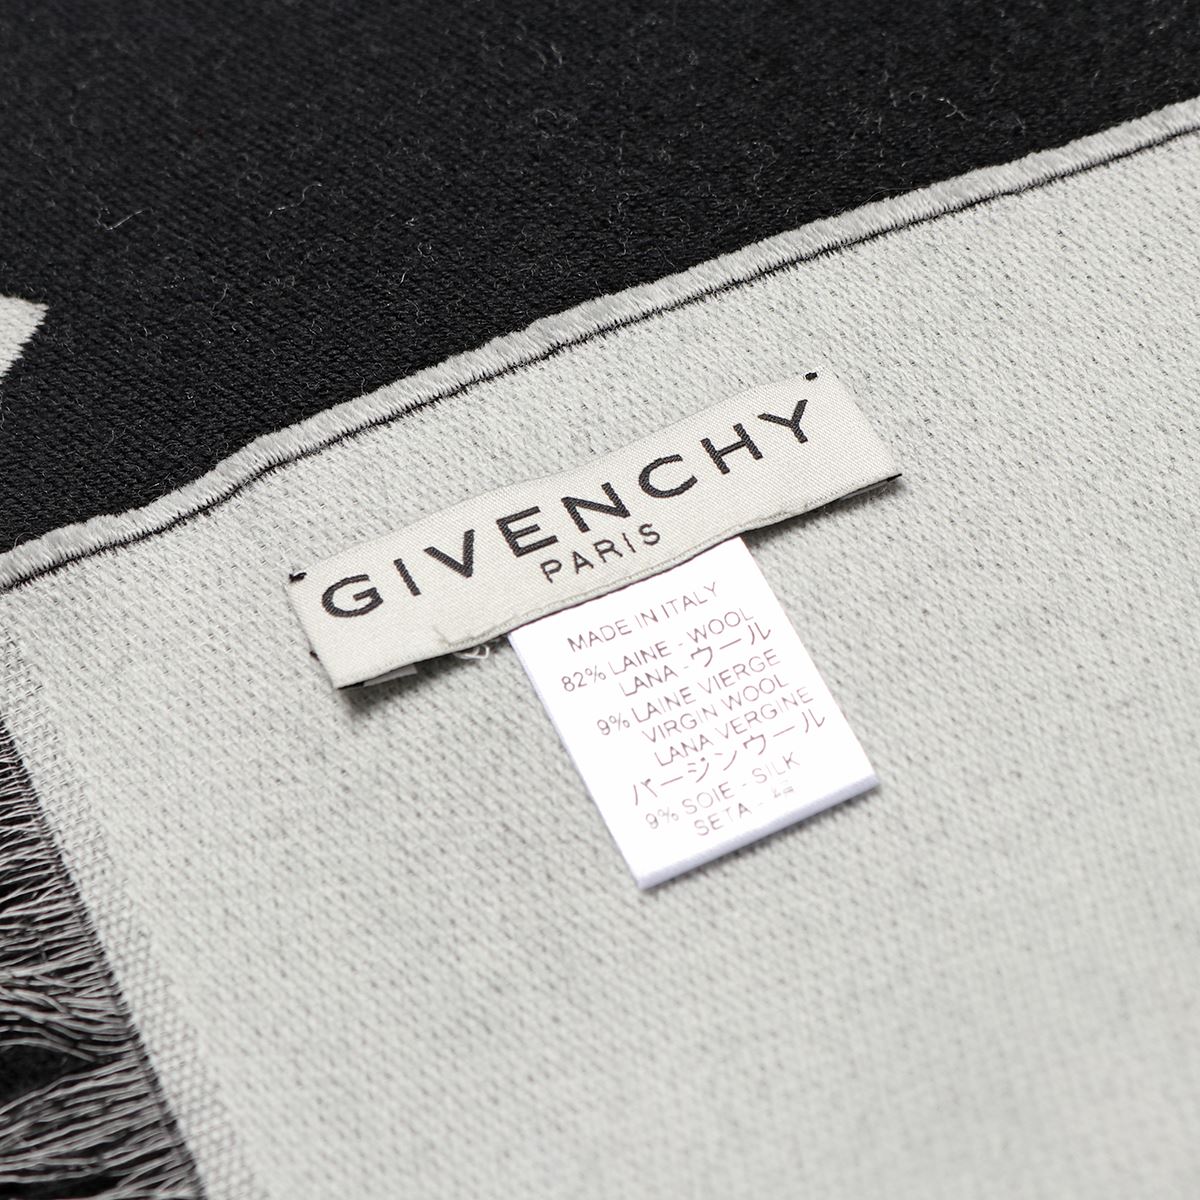 GIVENCHY ジバンシィ GV3518 J4180 カラー3色 マフラー ストール ロゴ シルク混ウール メンズ | インポートセレクト musee